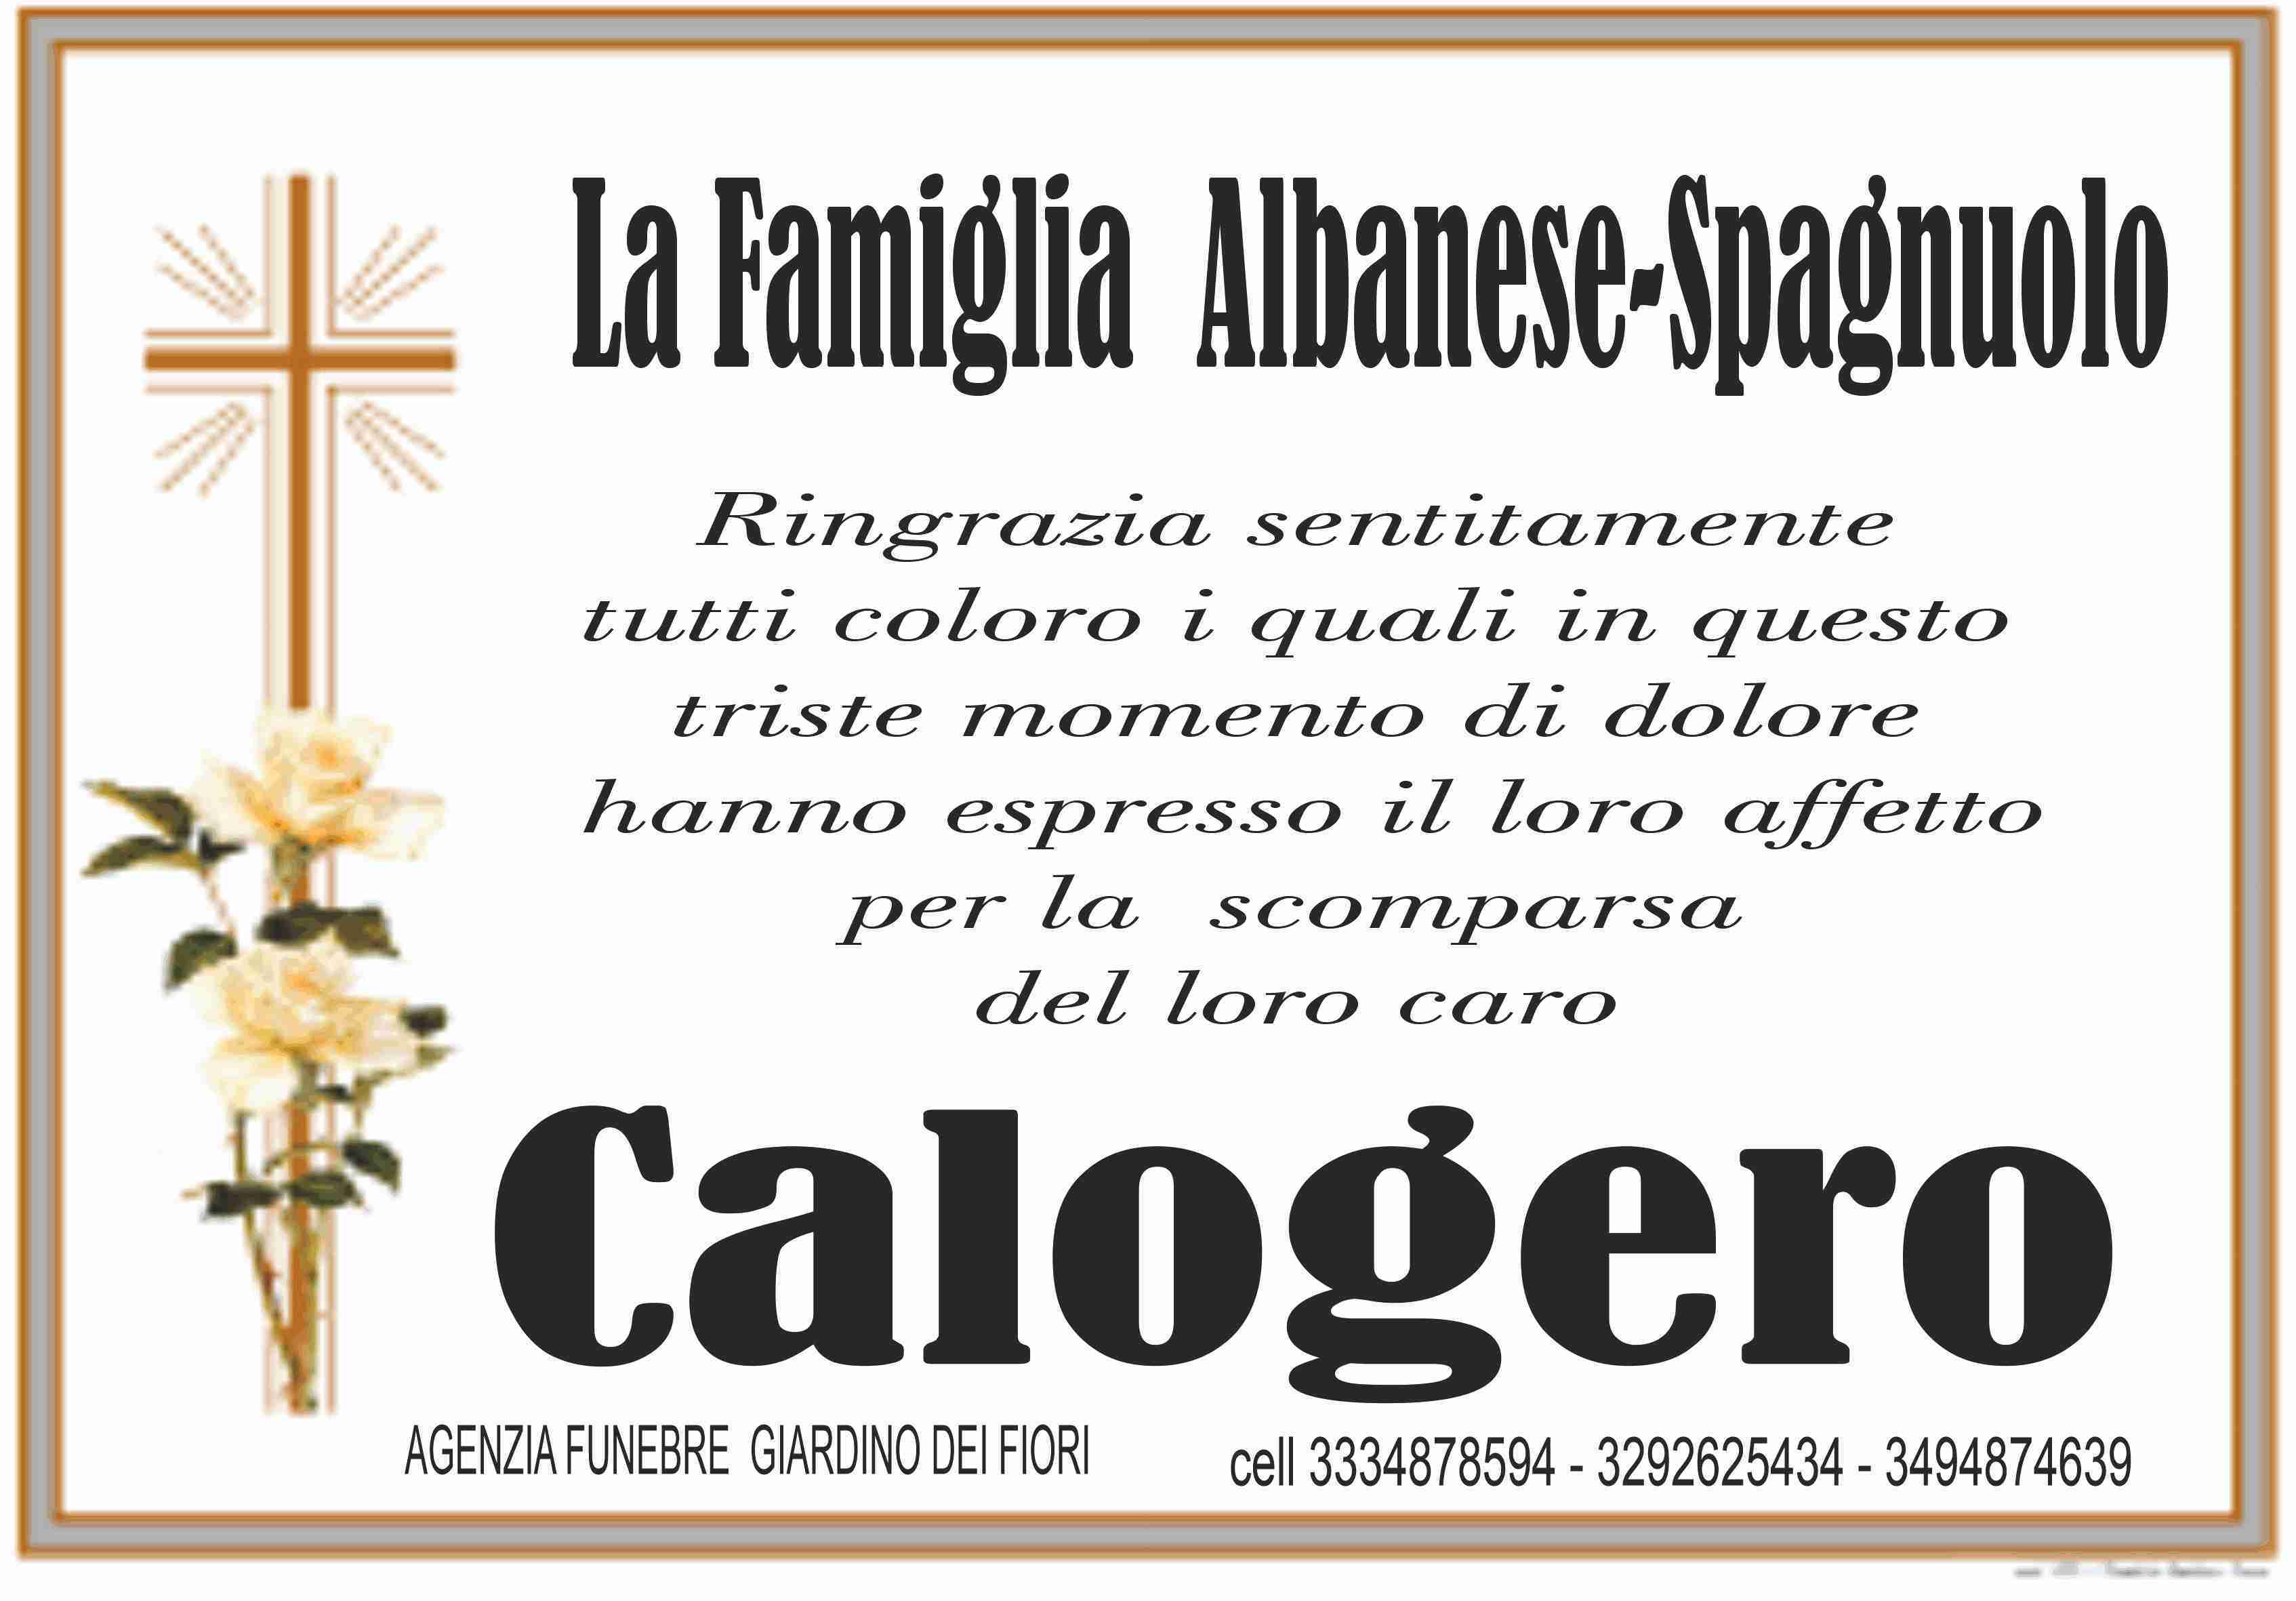 Calogero Spagnuolo